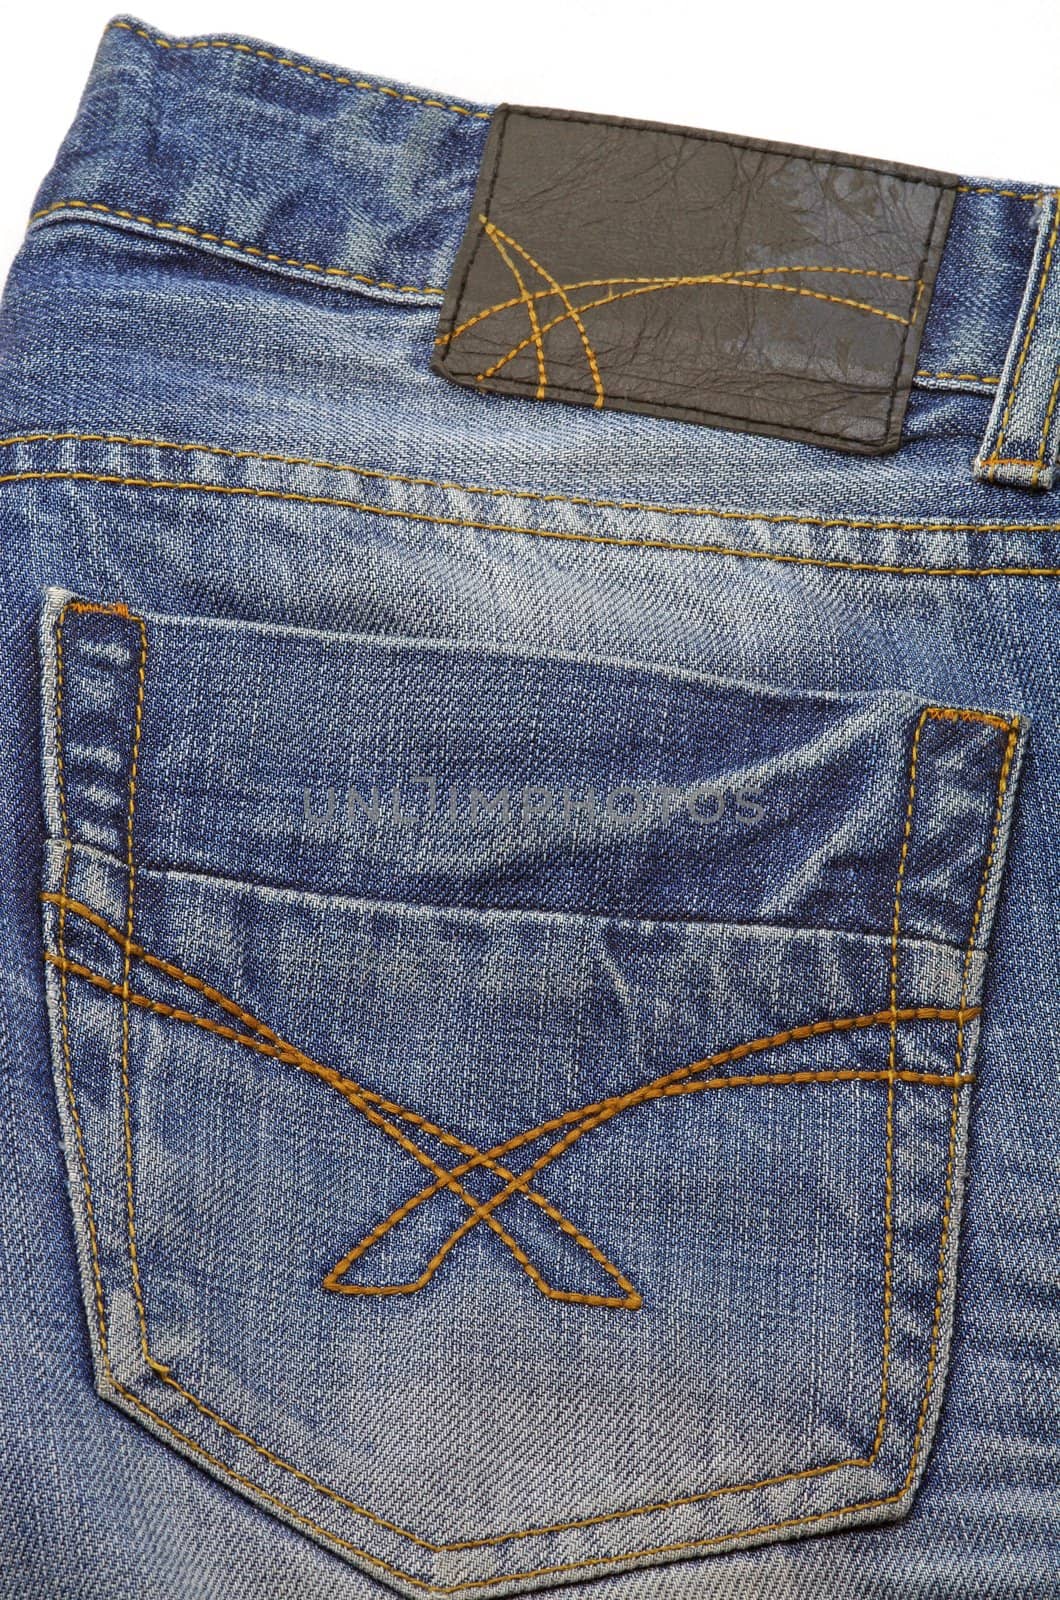 Blue jeans pocket, close up image